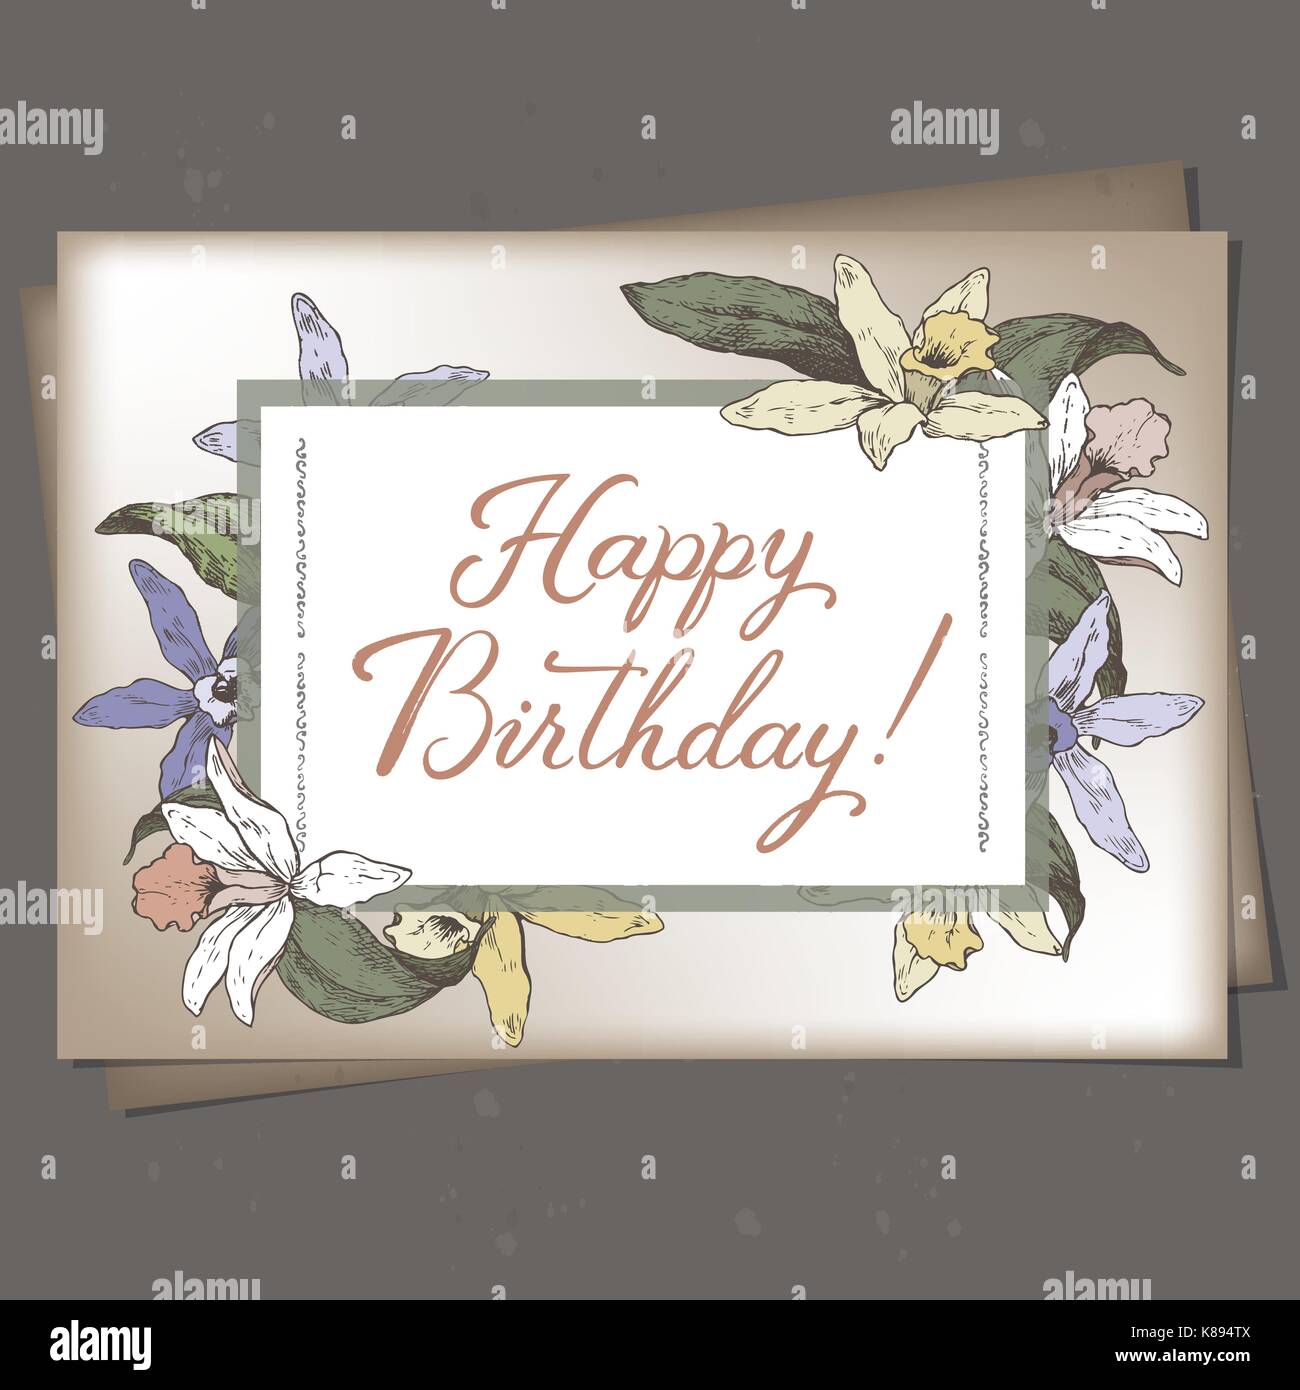 Querformat Format Romantisches Geburtstagskarte Vorlage Mit Kalligraphie Und Orchideen Skizze Stock Vektorgrafik Alamy